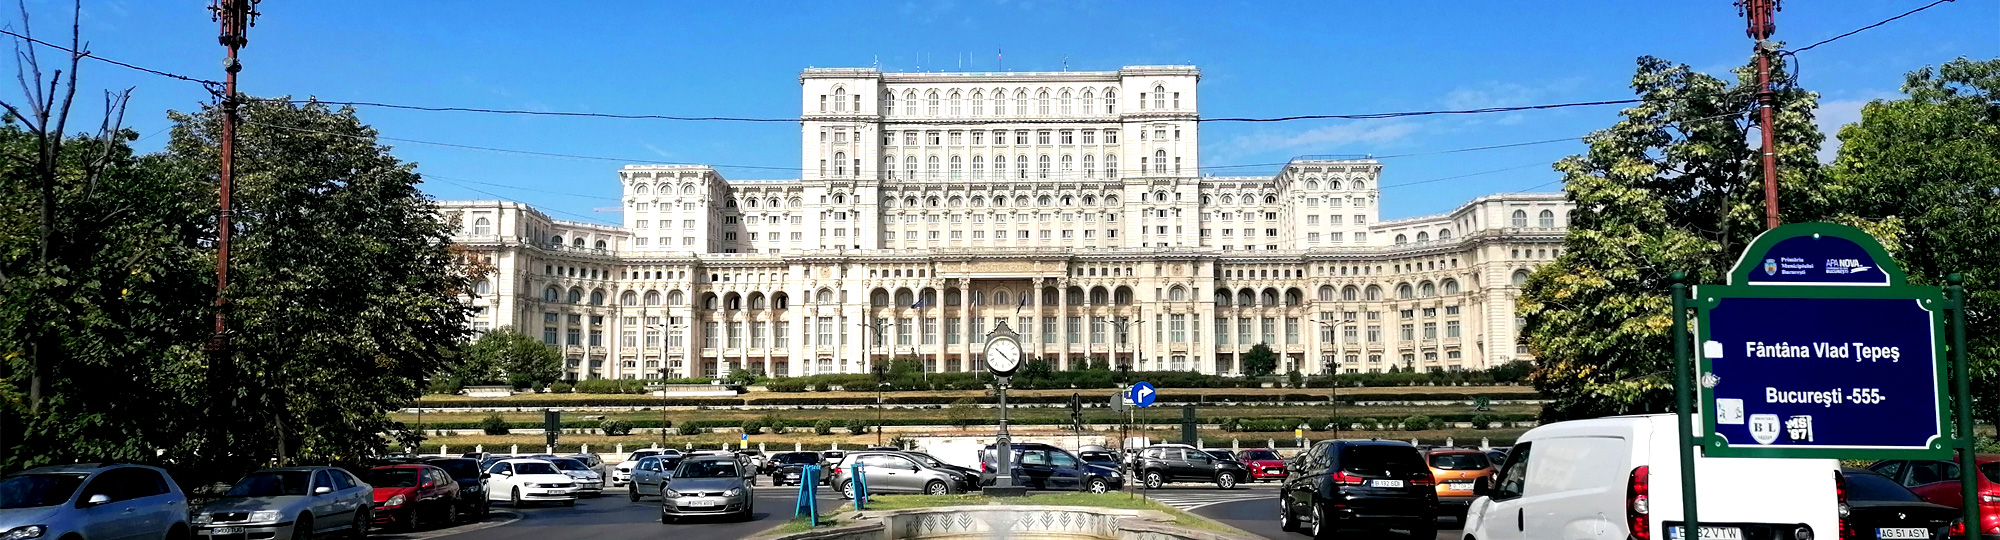 Le palais du Parlement de Bucarest, la folie d’un homme